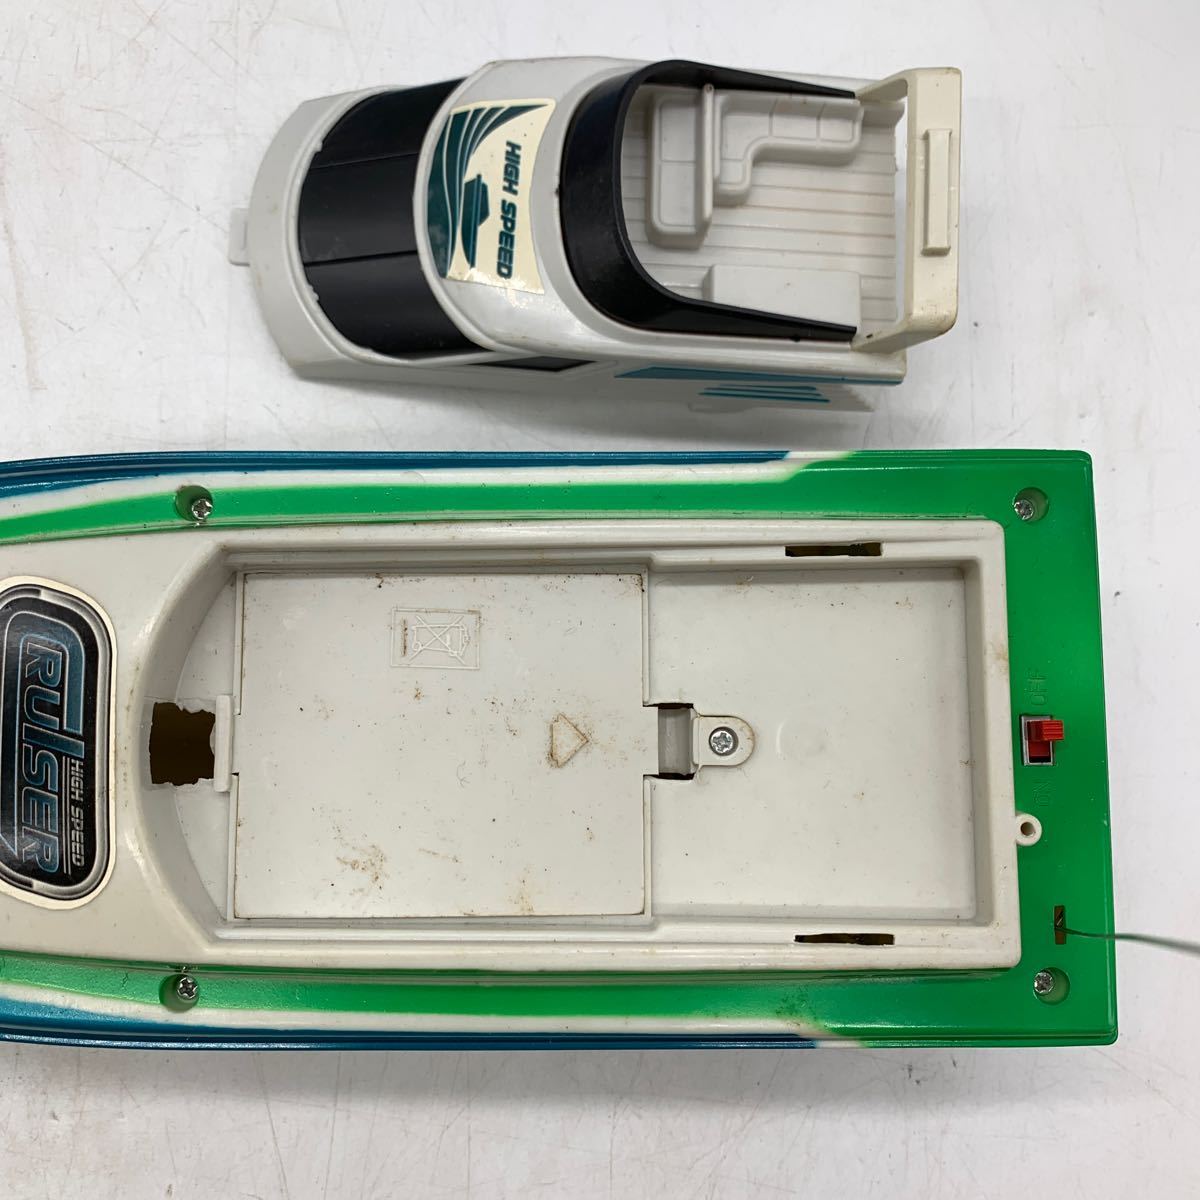 6-2-45# радиоконтроллер лодка Cruiser высокая скорость лодка RC Cruiser модель зеленый акционерное общество ji хлеб g retro коллекция Junk 